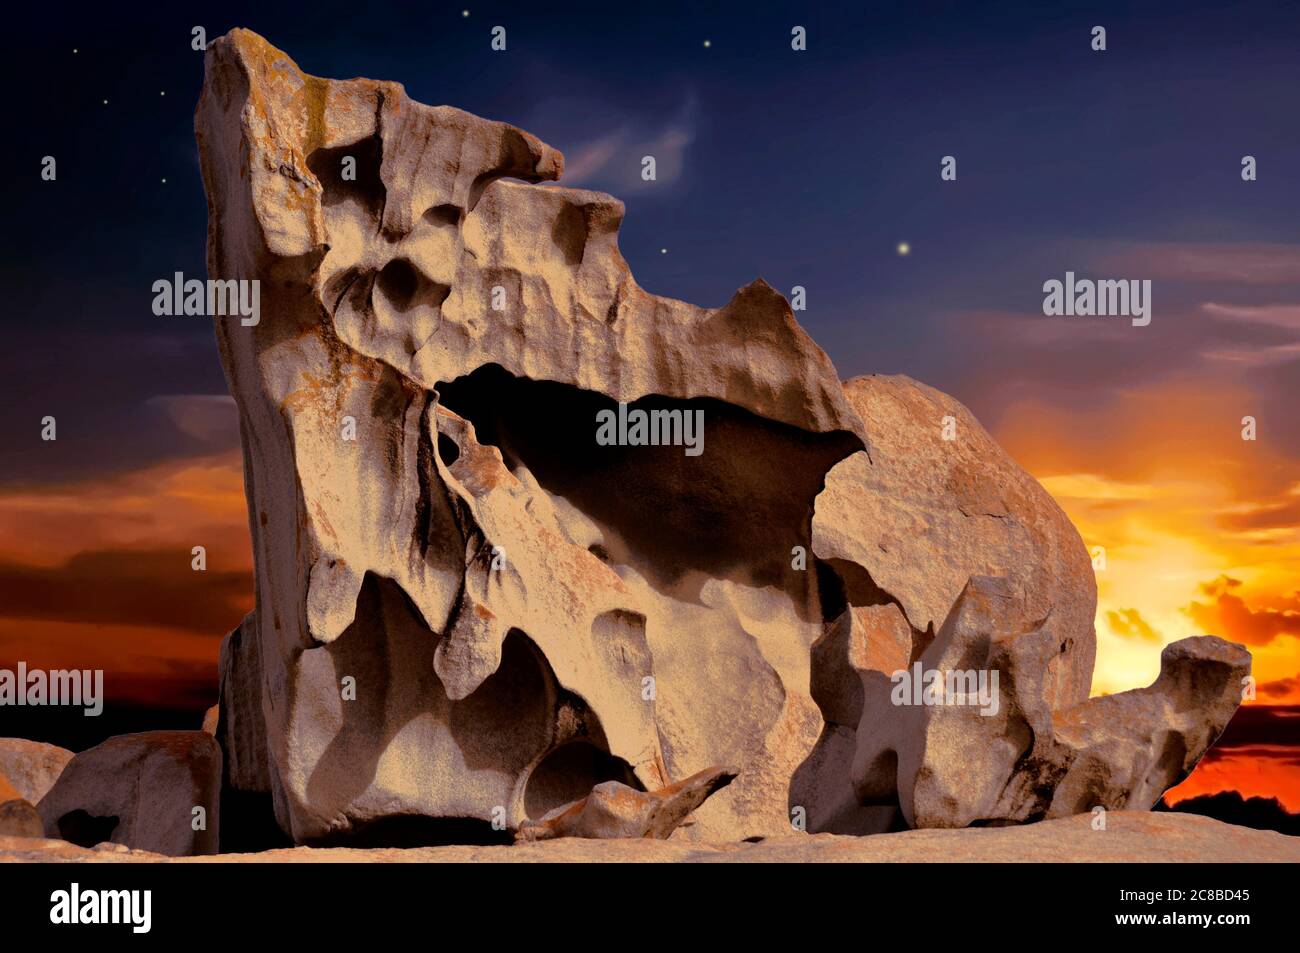 Étranges formations rocheuses à l'île de Kanguro, Australie méridionale Banque D'Images